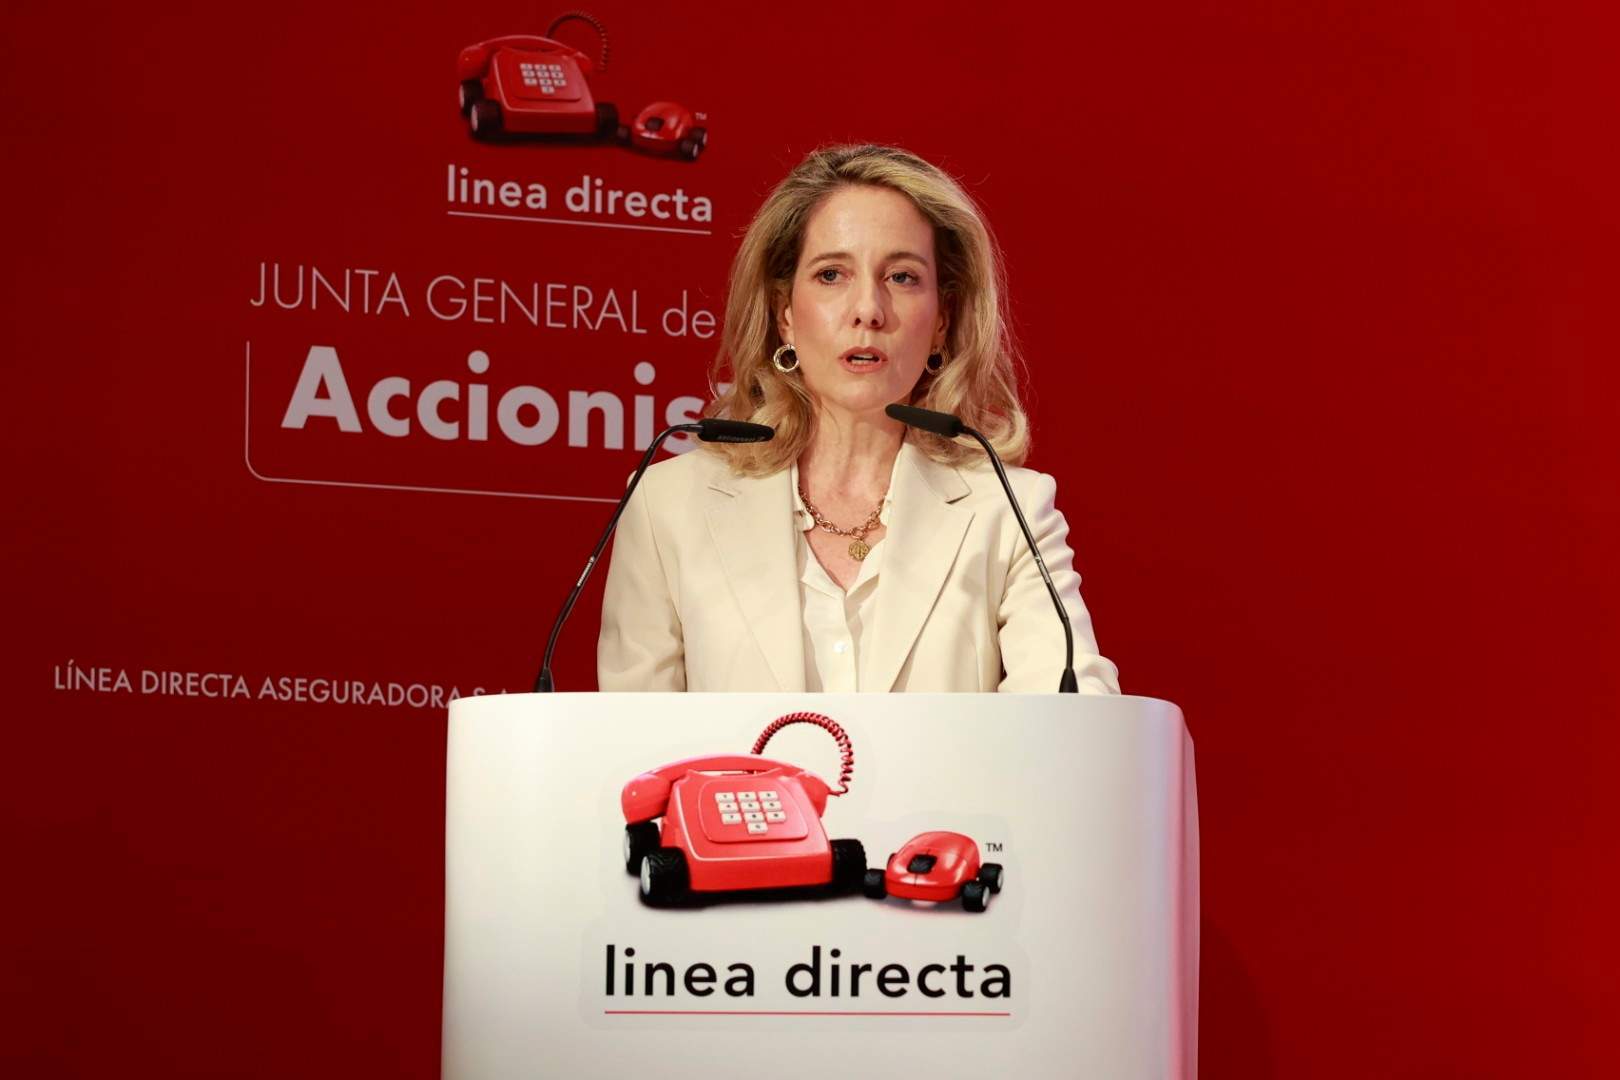 Línea Directa gana 10,1 millones de euros en el primer trimestre, frente a unas pérdidas de 5,3 millones